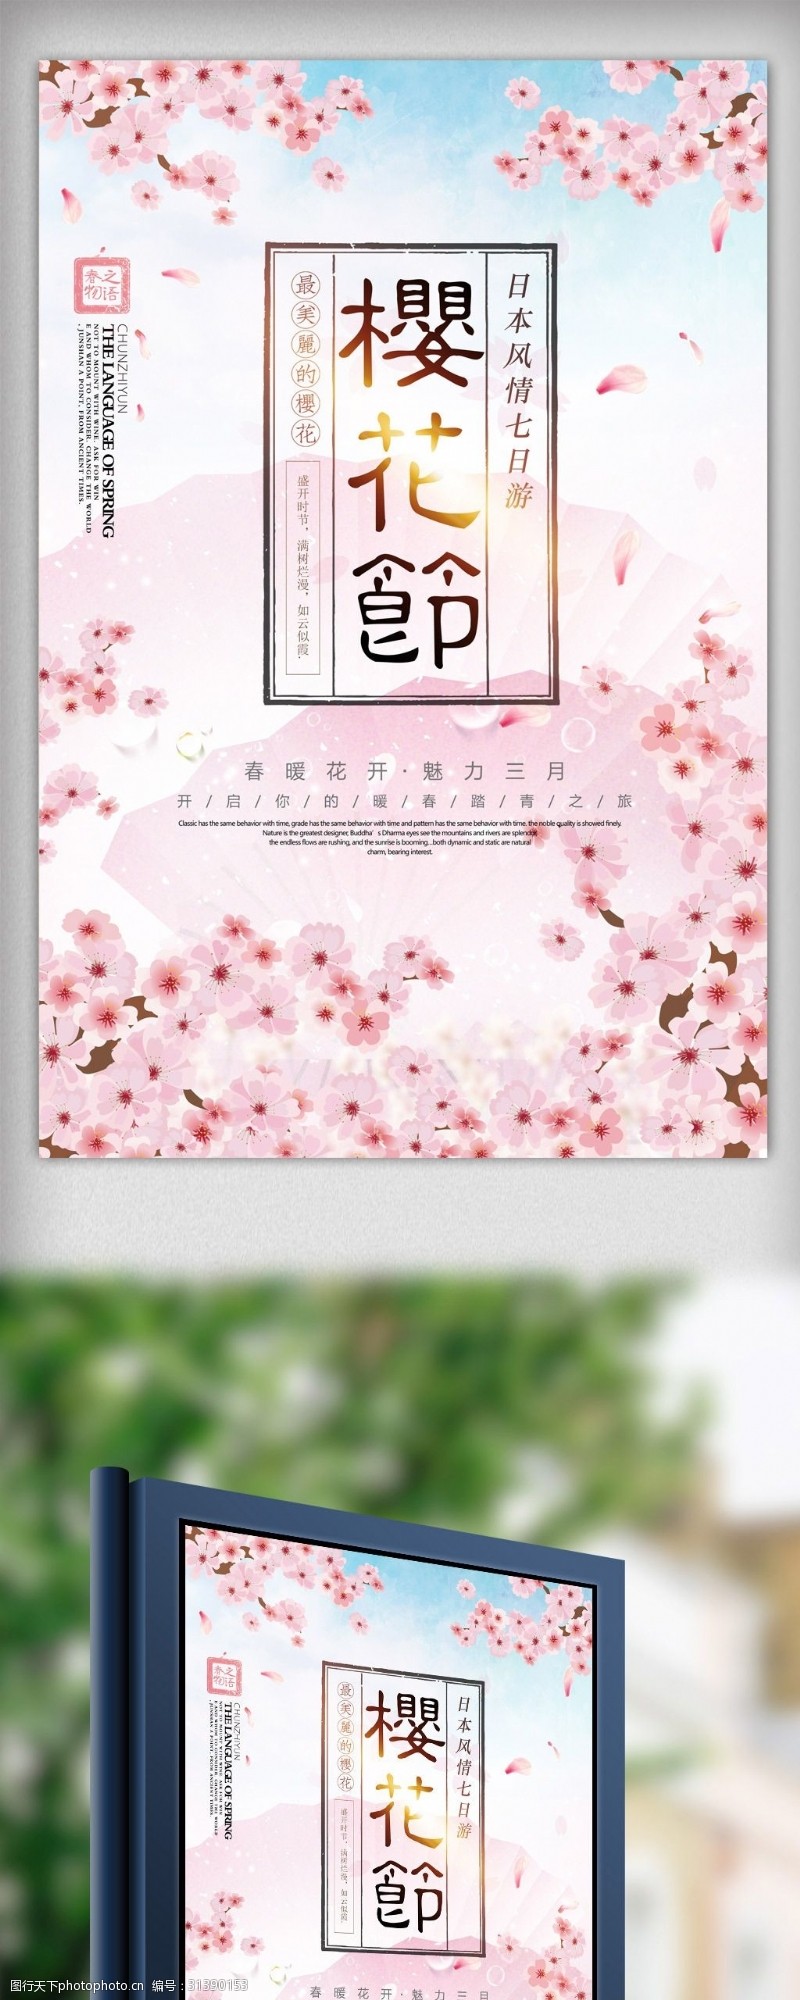 武汉樱花节粉色唯美樱花节樱花旅游海报